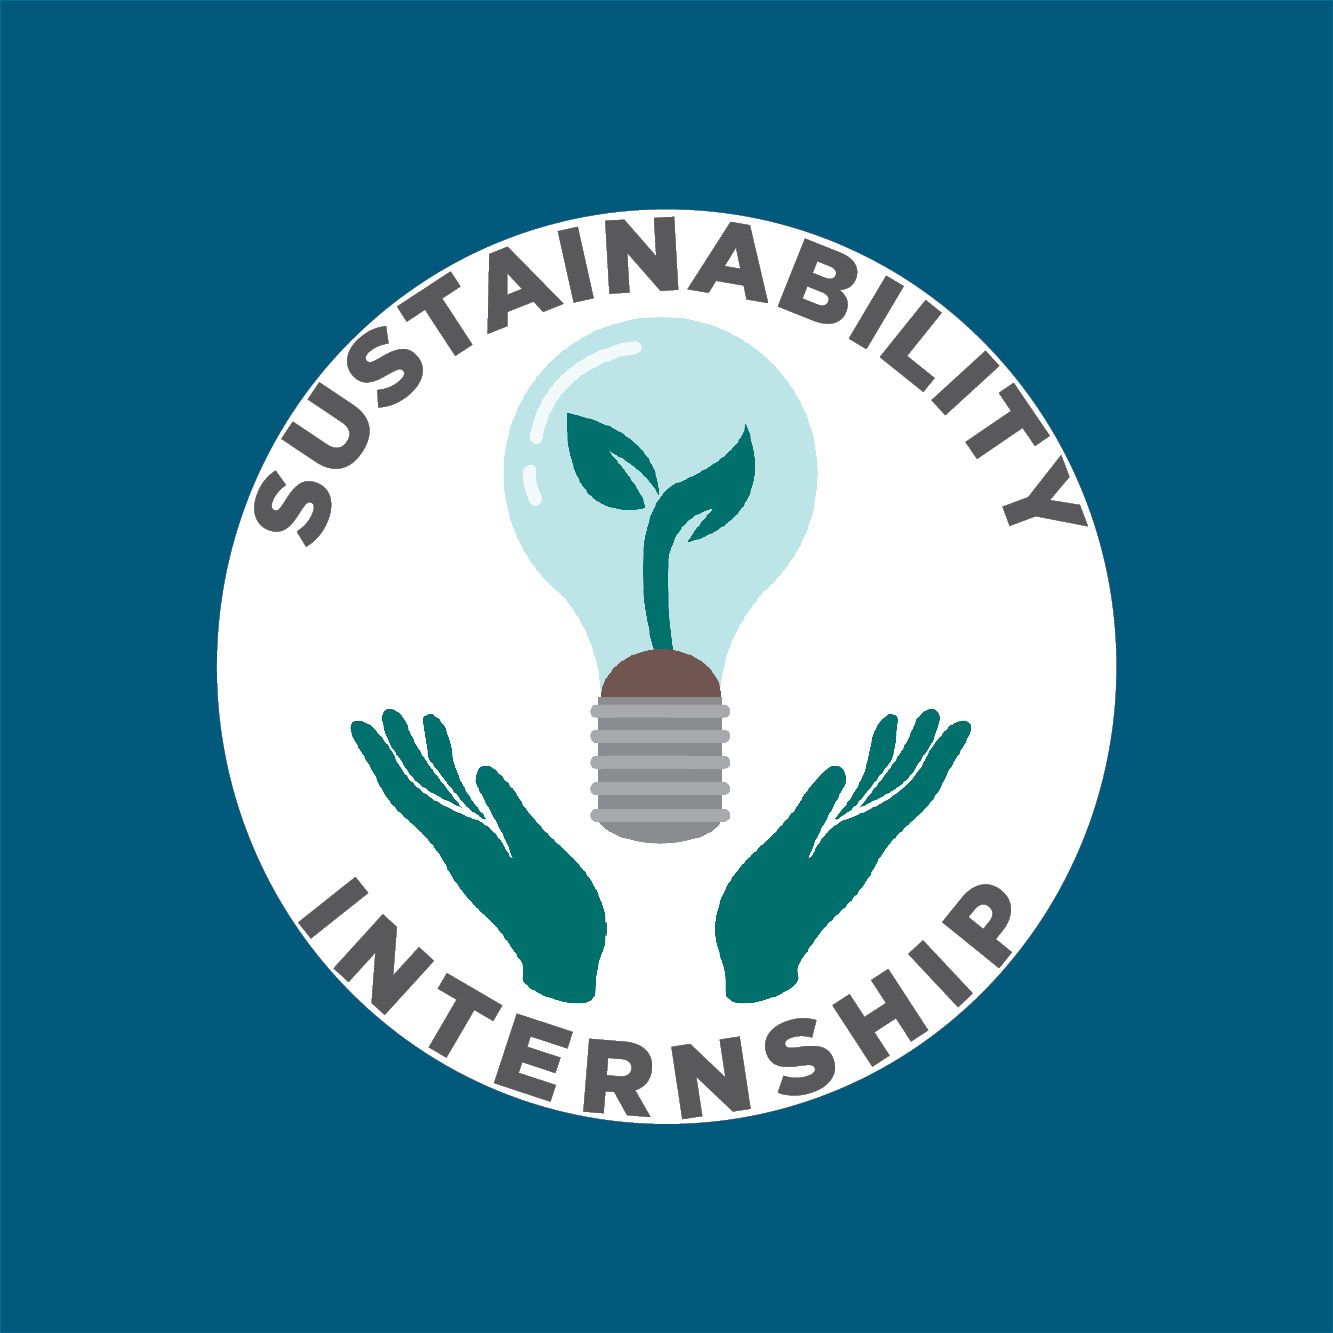 Sustainability Internship Program Office of Sustainability